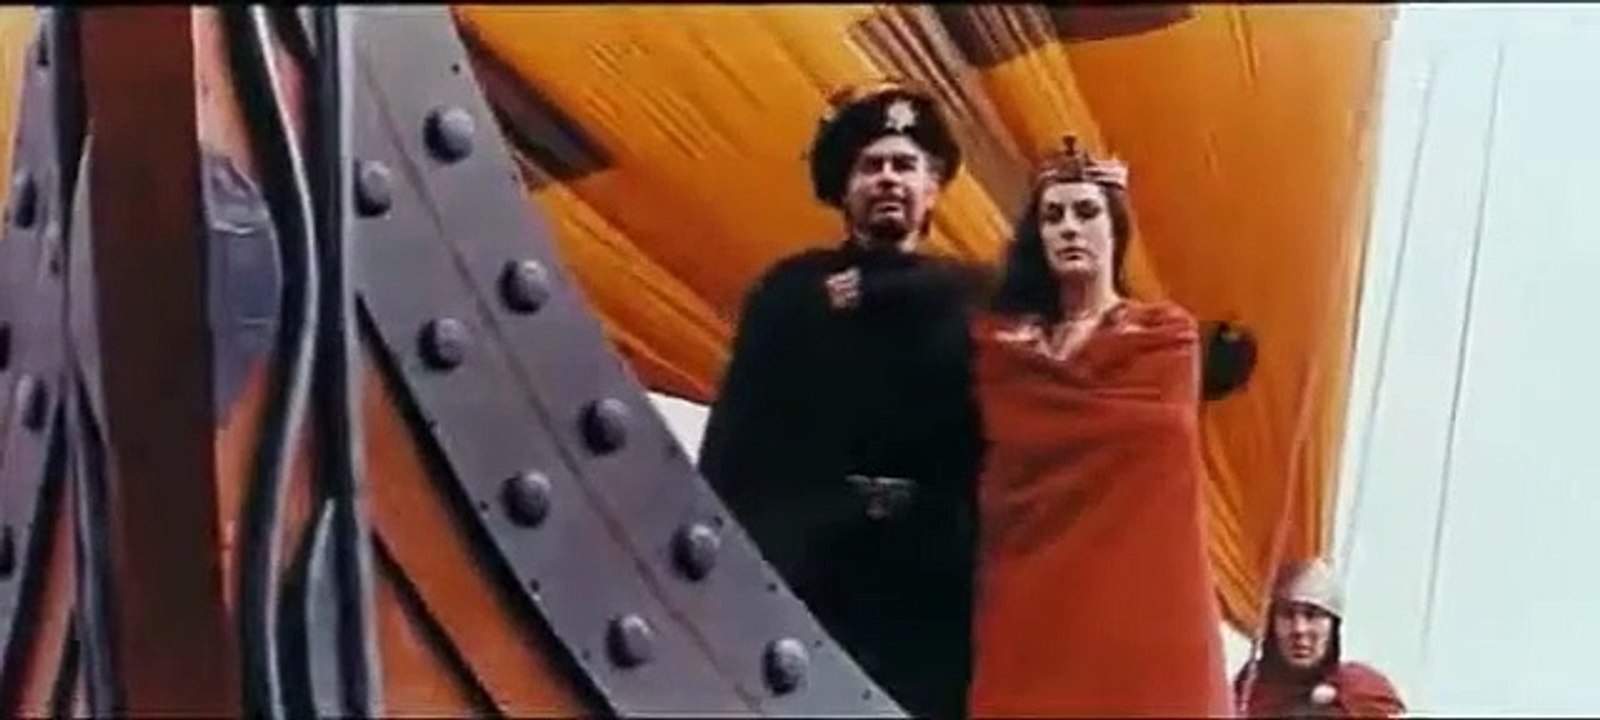 Die Nibelungen, Teil 1: Siegfried | movie | 1966 | Official Trailer